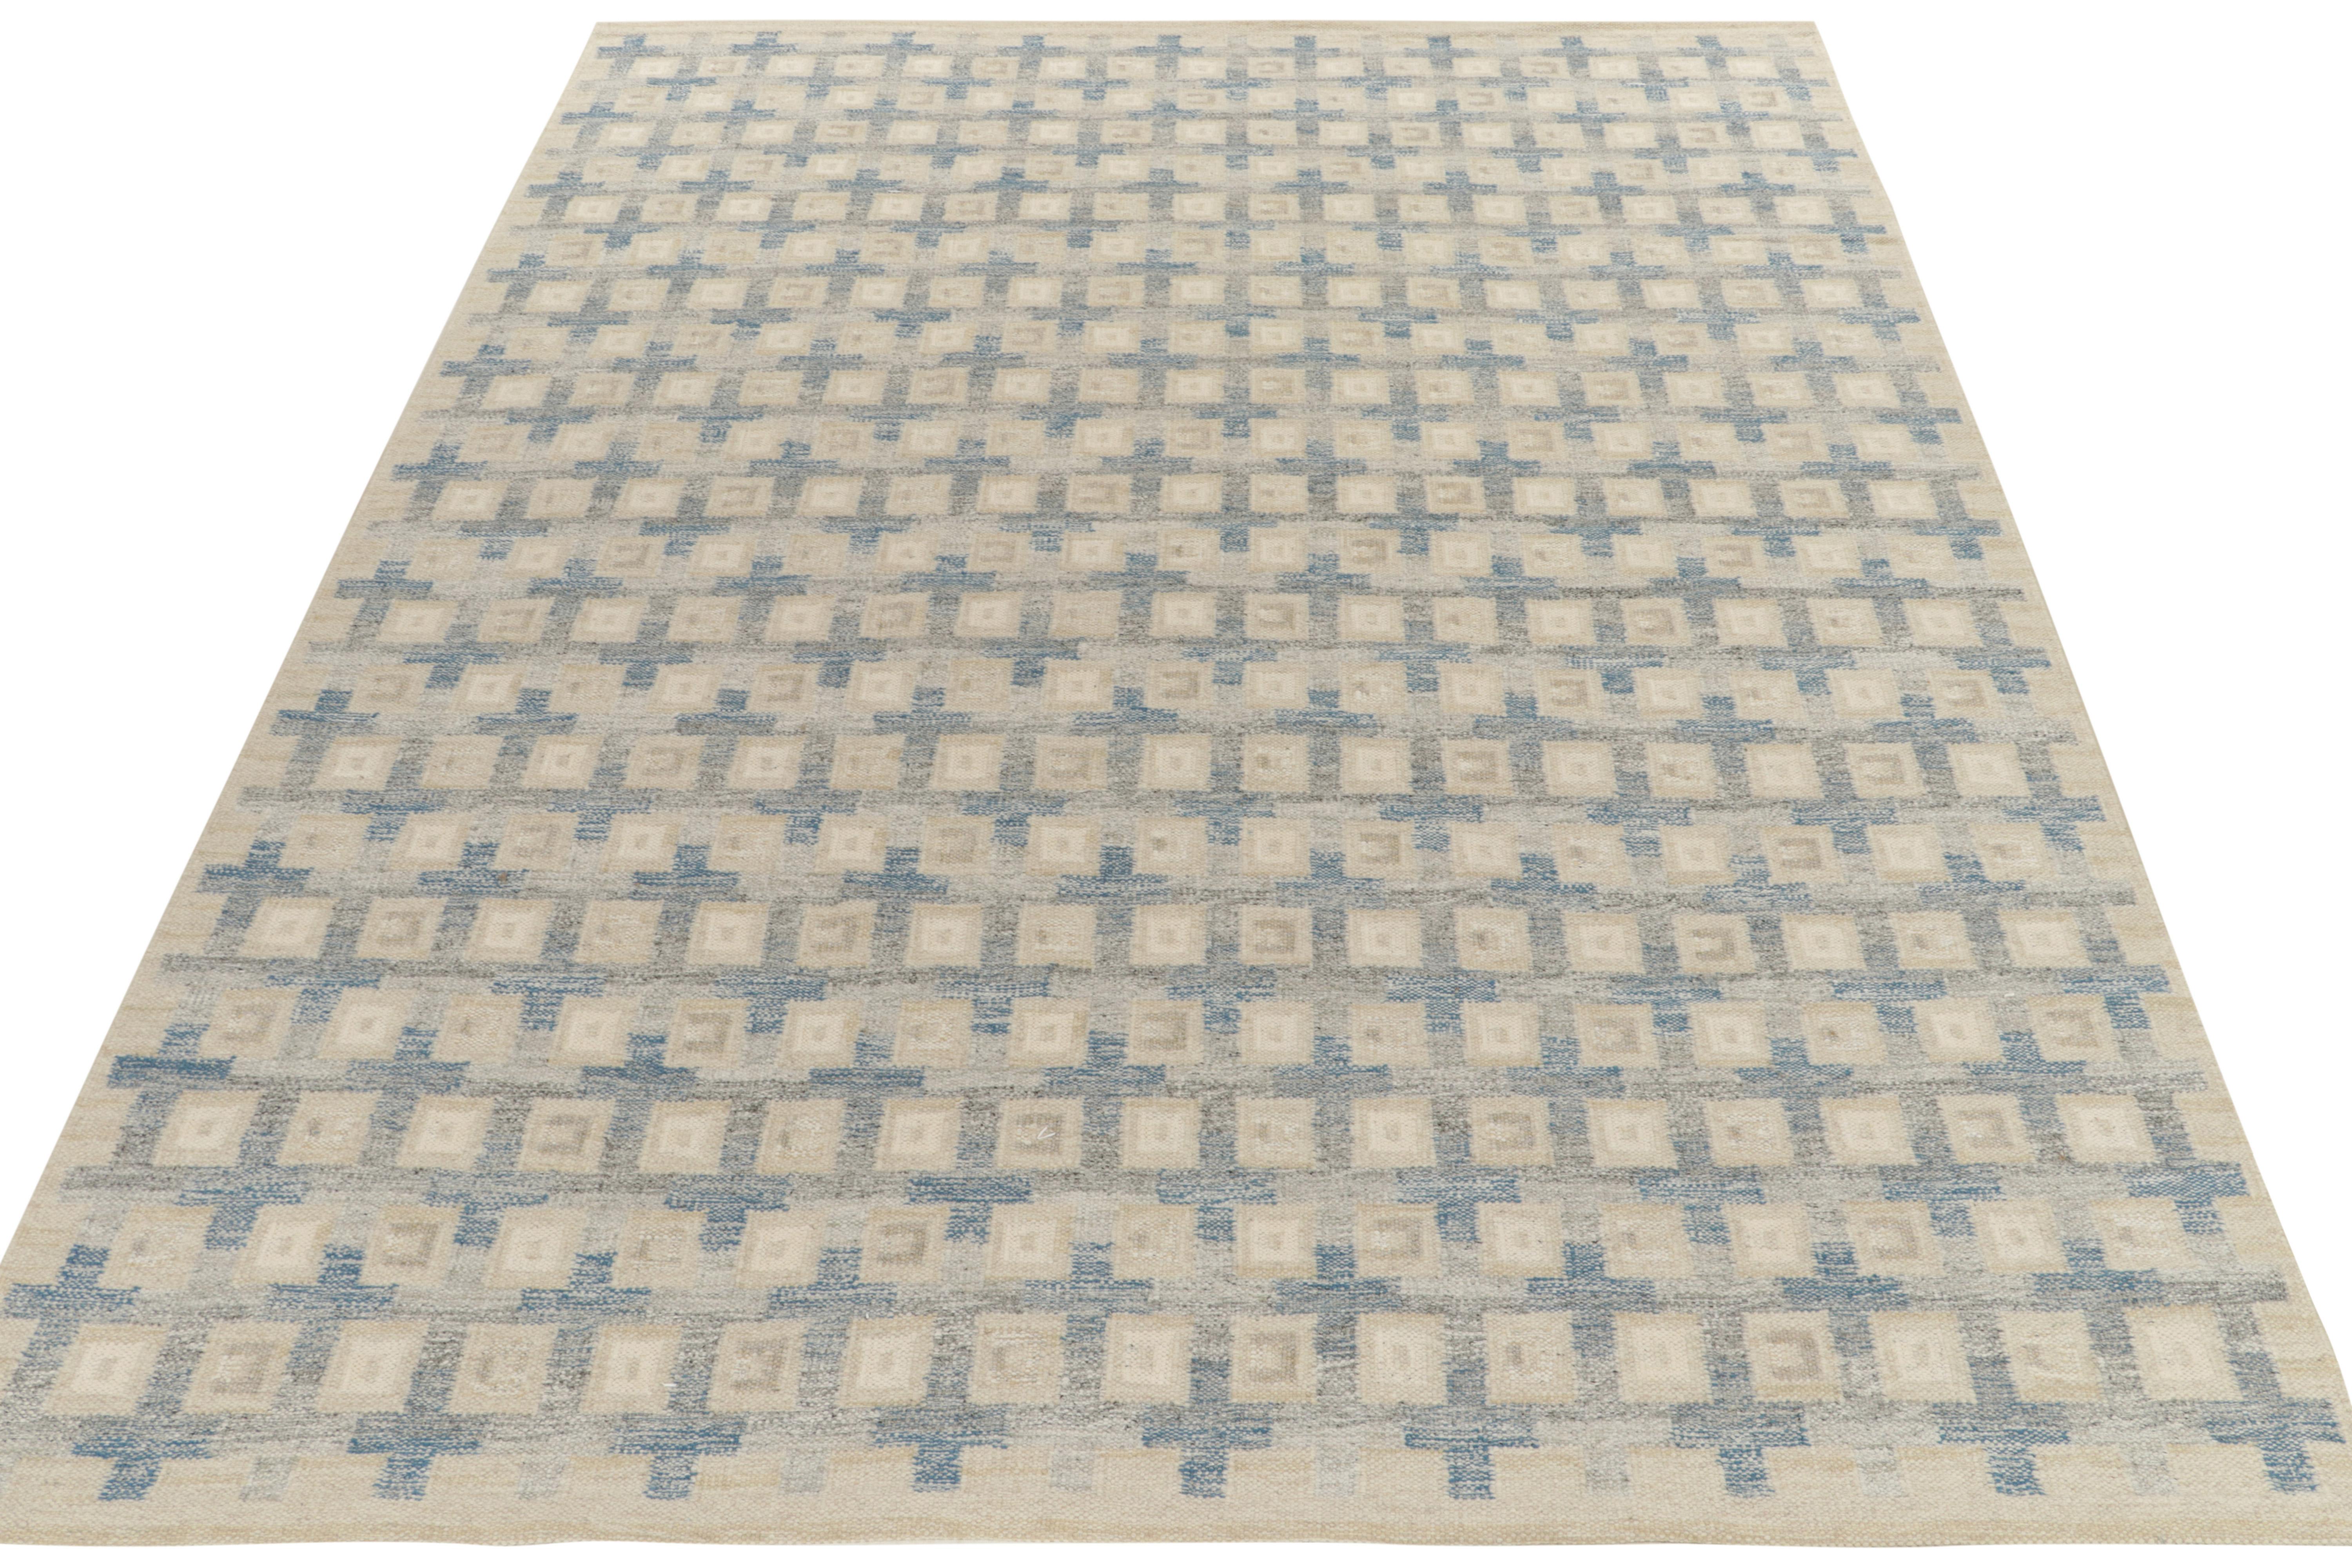 Un tissage plat fait à la main de la collection Kilim scandinave primée de Rug & Kilim. Ce tapis de 10 x 14 illustre la sensibilité texturale de la ligne en complétant le motif géométrique de style mid-century. Il présente une pagination